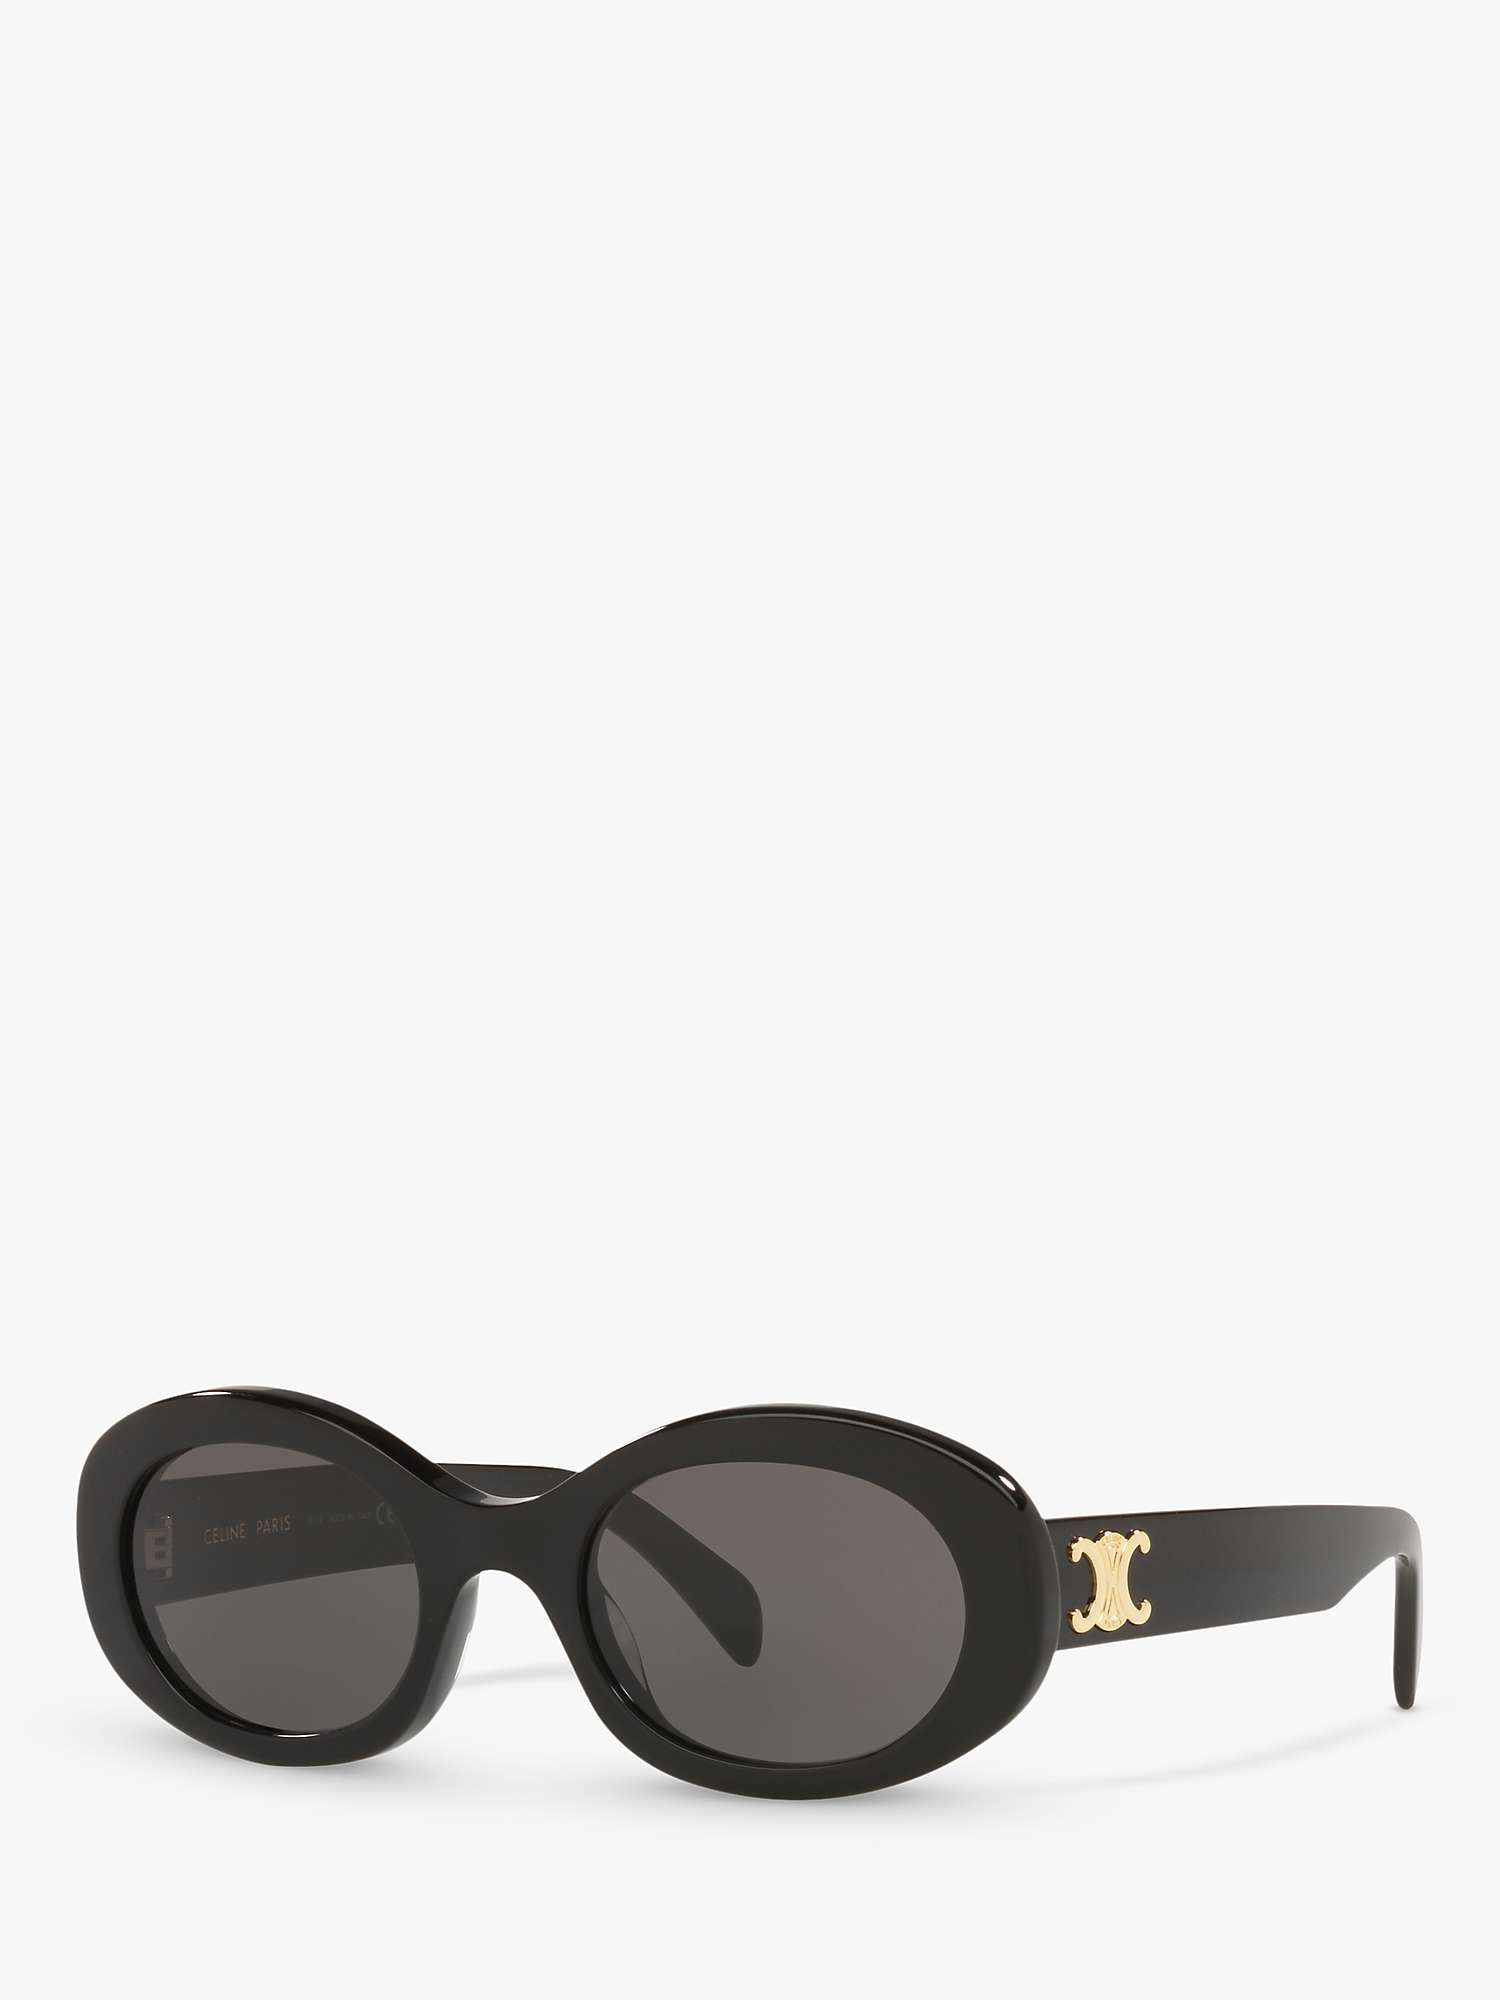 Buy Celine CL000312 Unisex Oval Sunglasses, Black/Grey Online at johnlewis.com